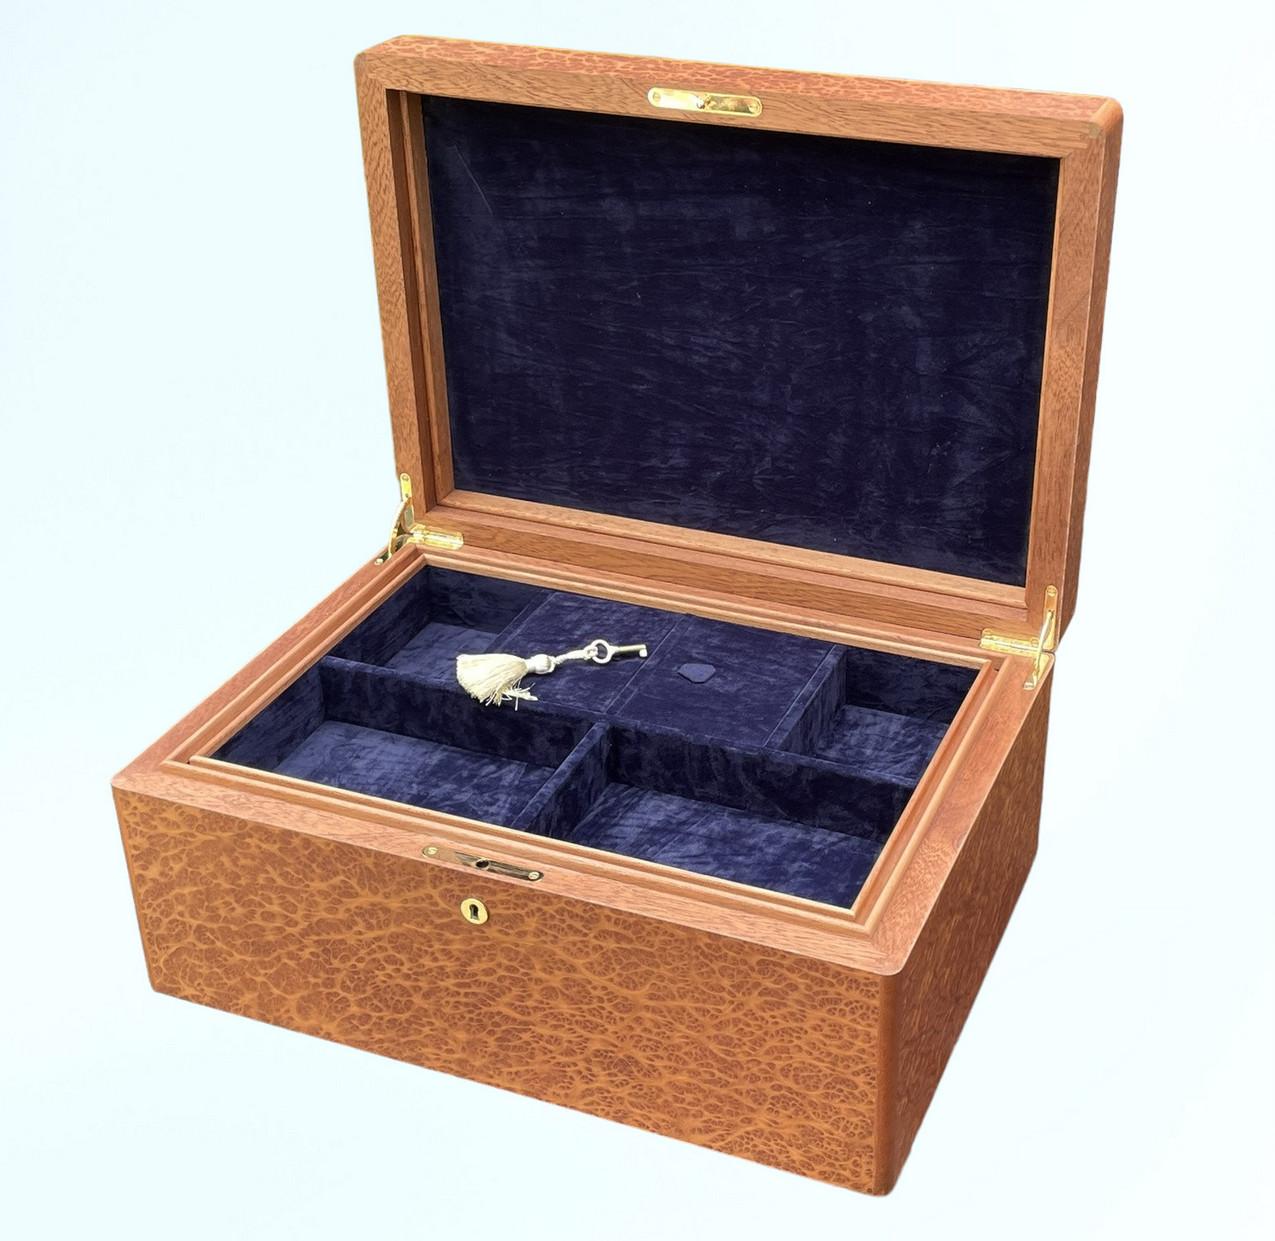 Diese hölzerne Schmuckschatulle von Vavona wurde von der Famed Manning of Ireland Company hergestellt und ist wahrlich ein handwerklich geniales Juwel. Diese Kiste ist aus den feinsten Hölzern gefertigt, die es gibt, und das Wissen und Können von 4